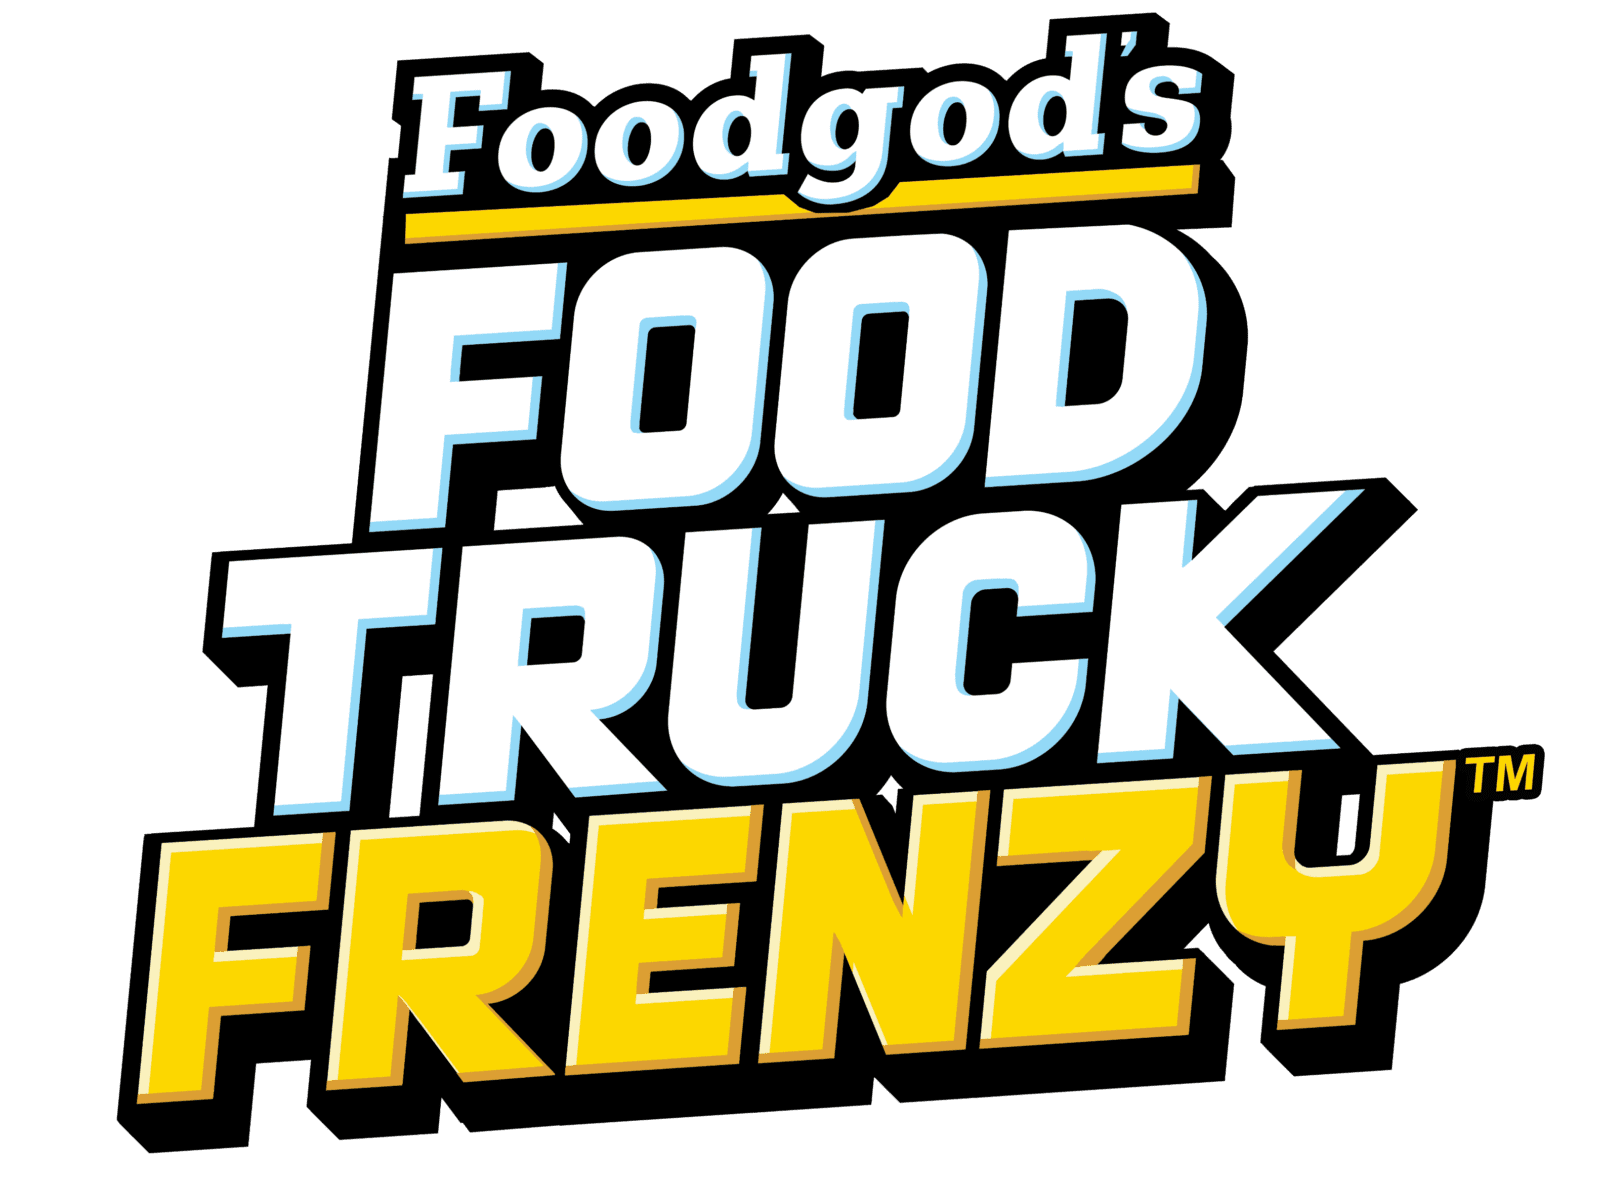 Foodgod's Food Truck Frenzy